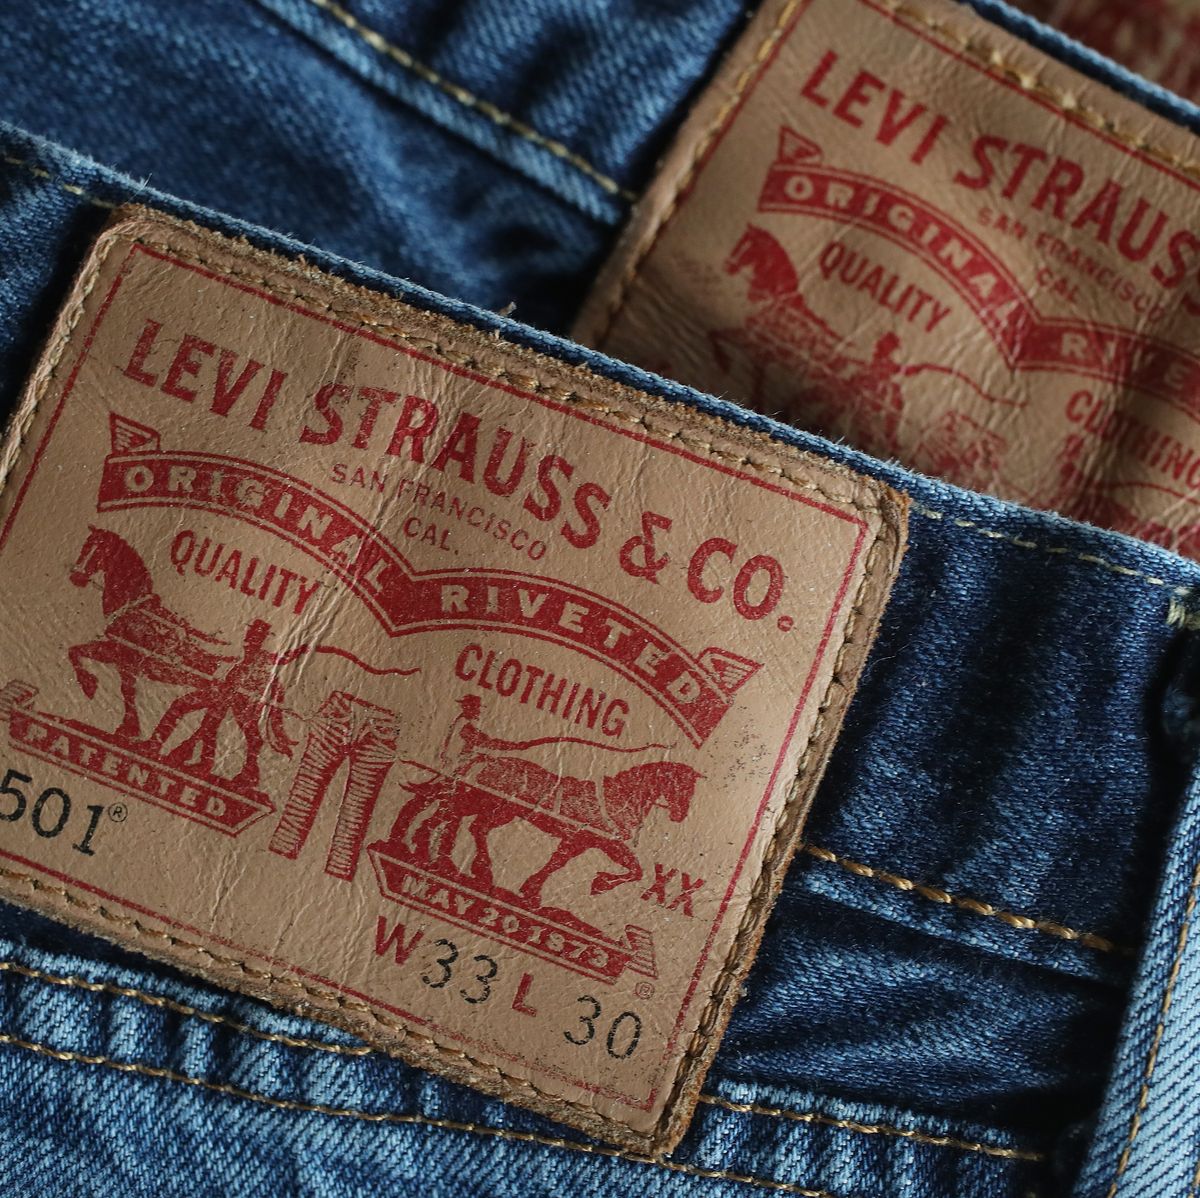 Rebajas en vaqueros Levi's 501, los originales que proporcionan estilo y  durabilidad al mejor precio